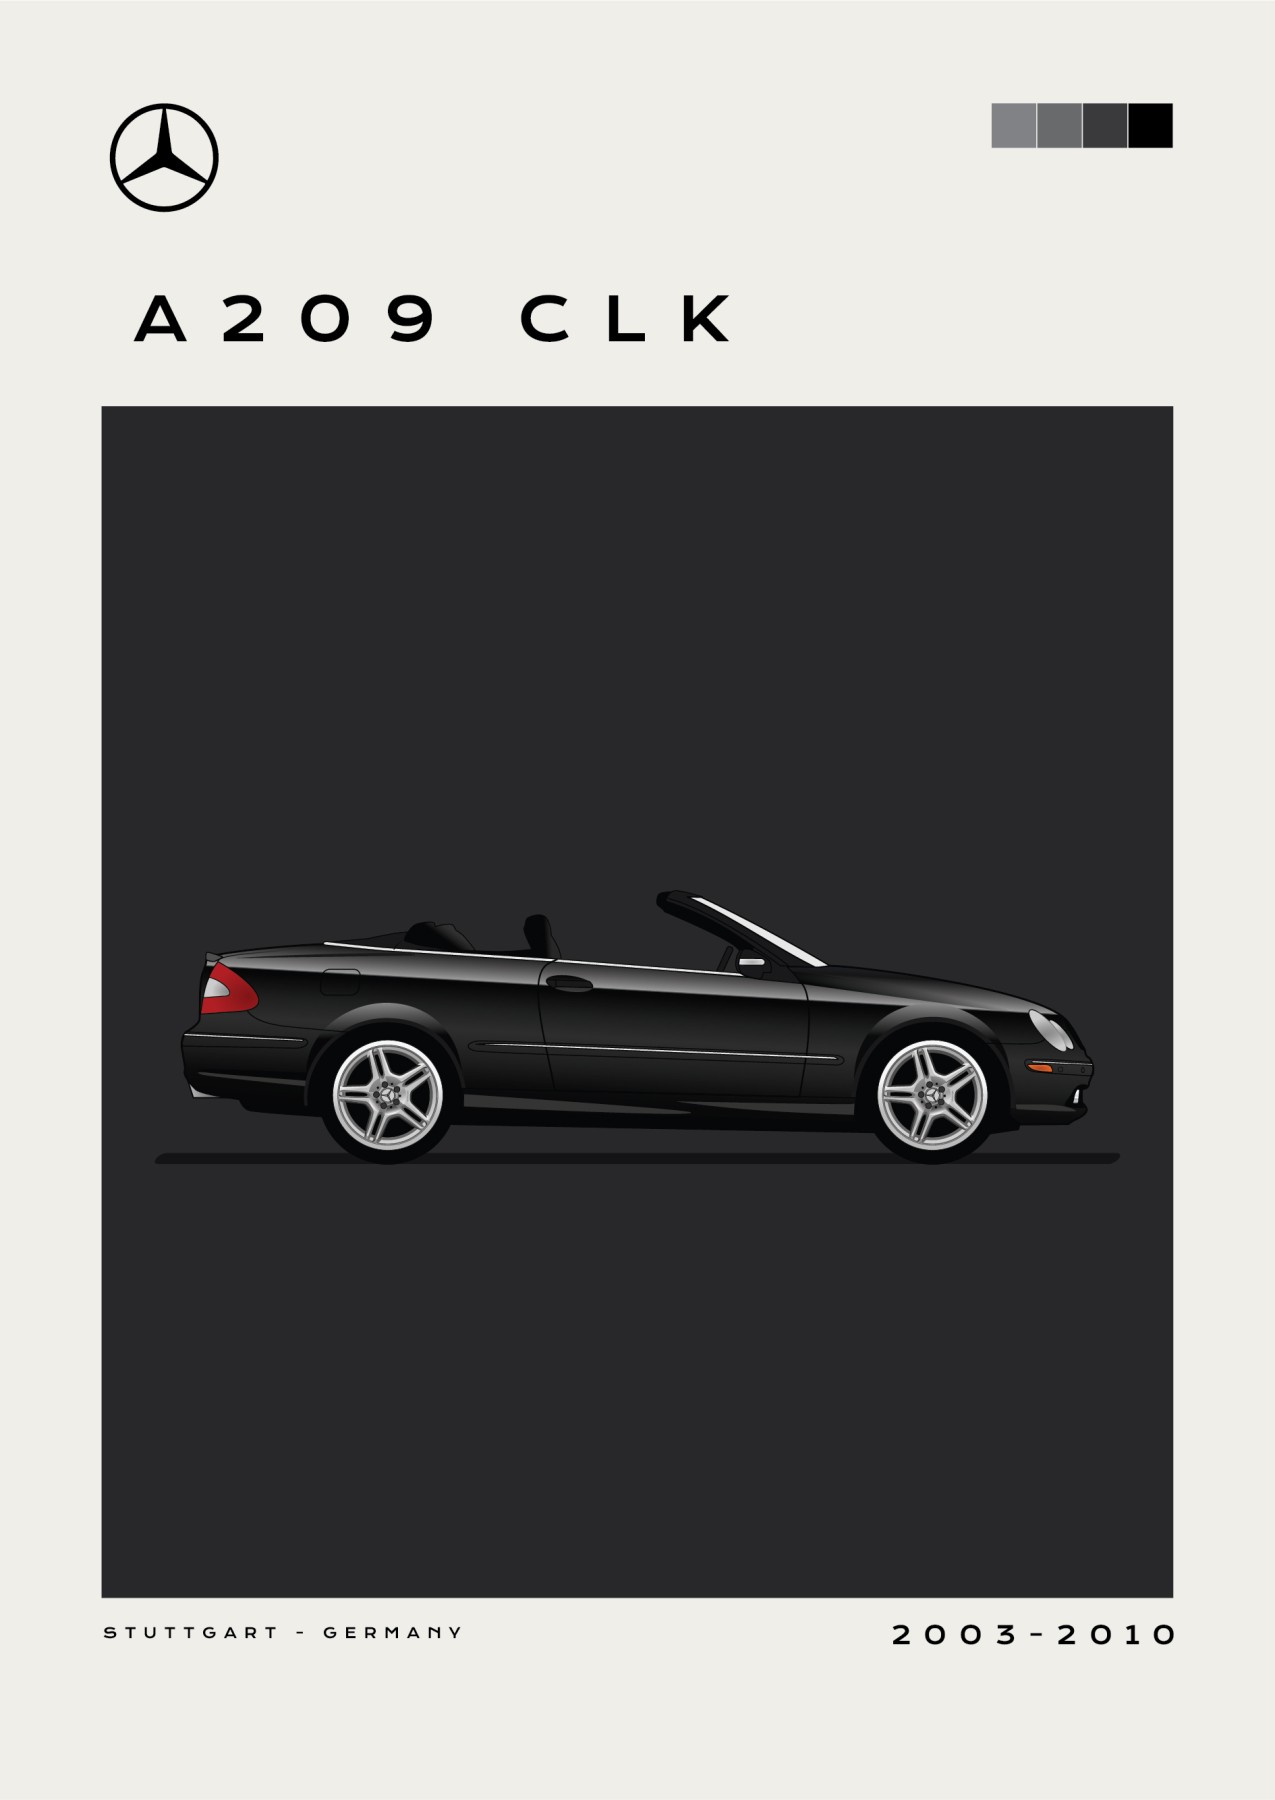 Mercedes – A209 CLK - Black